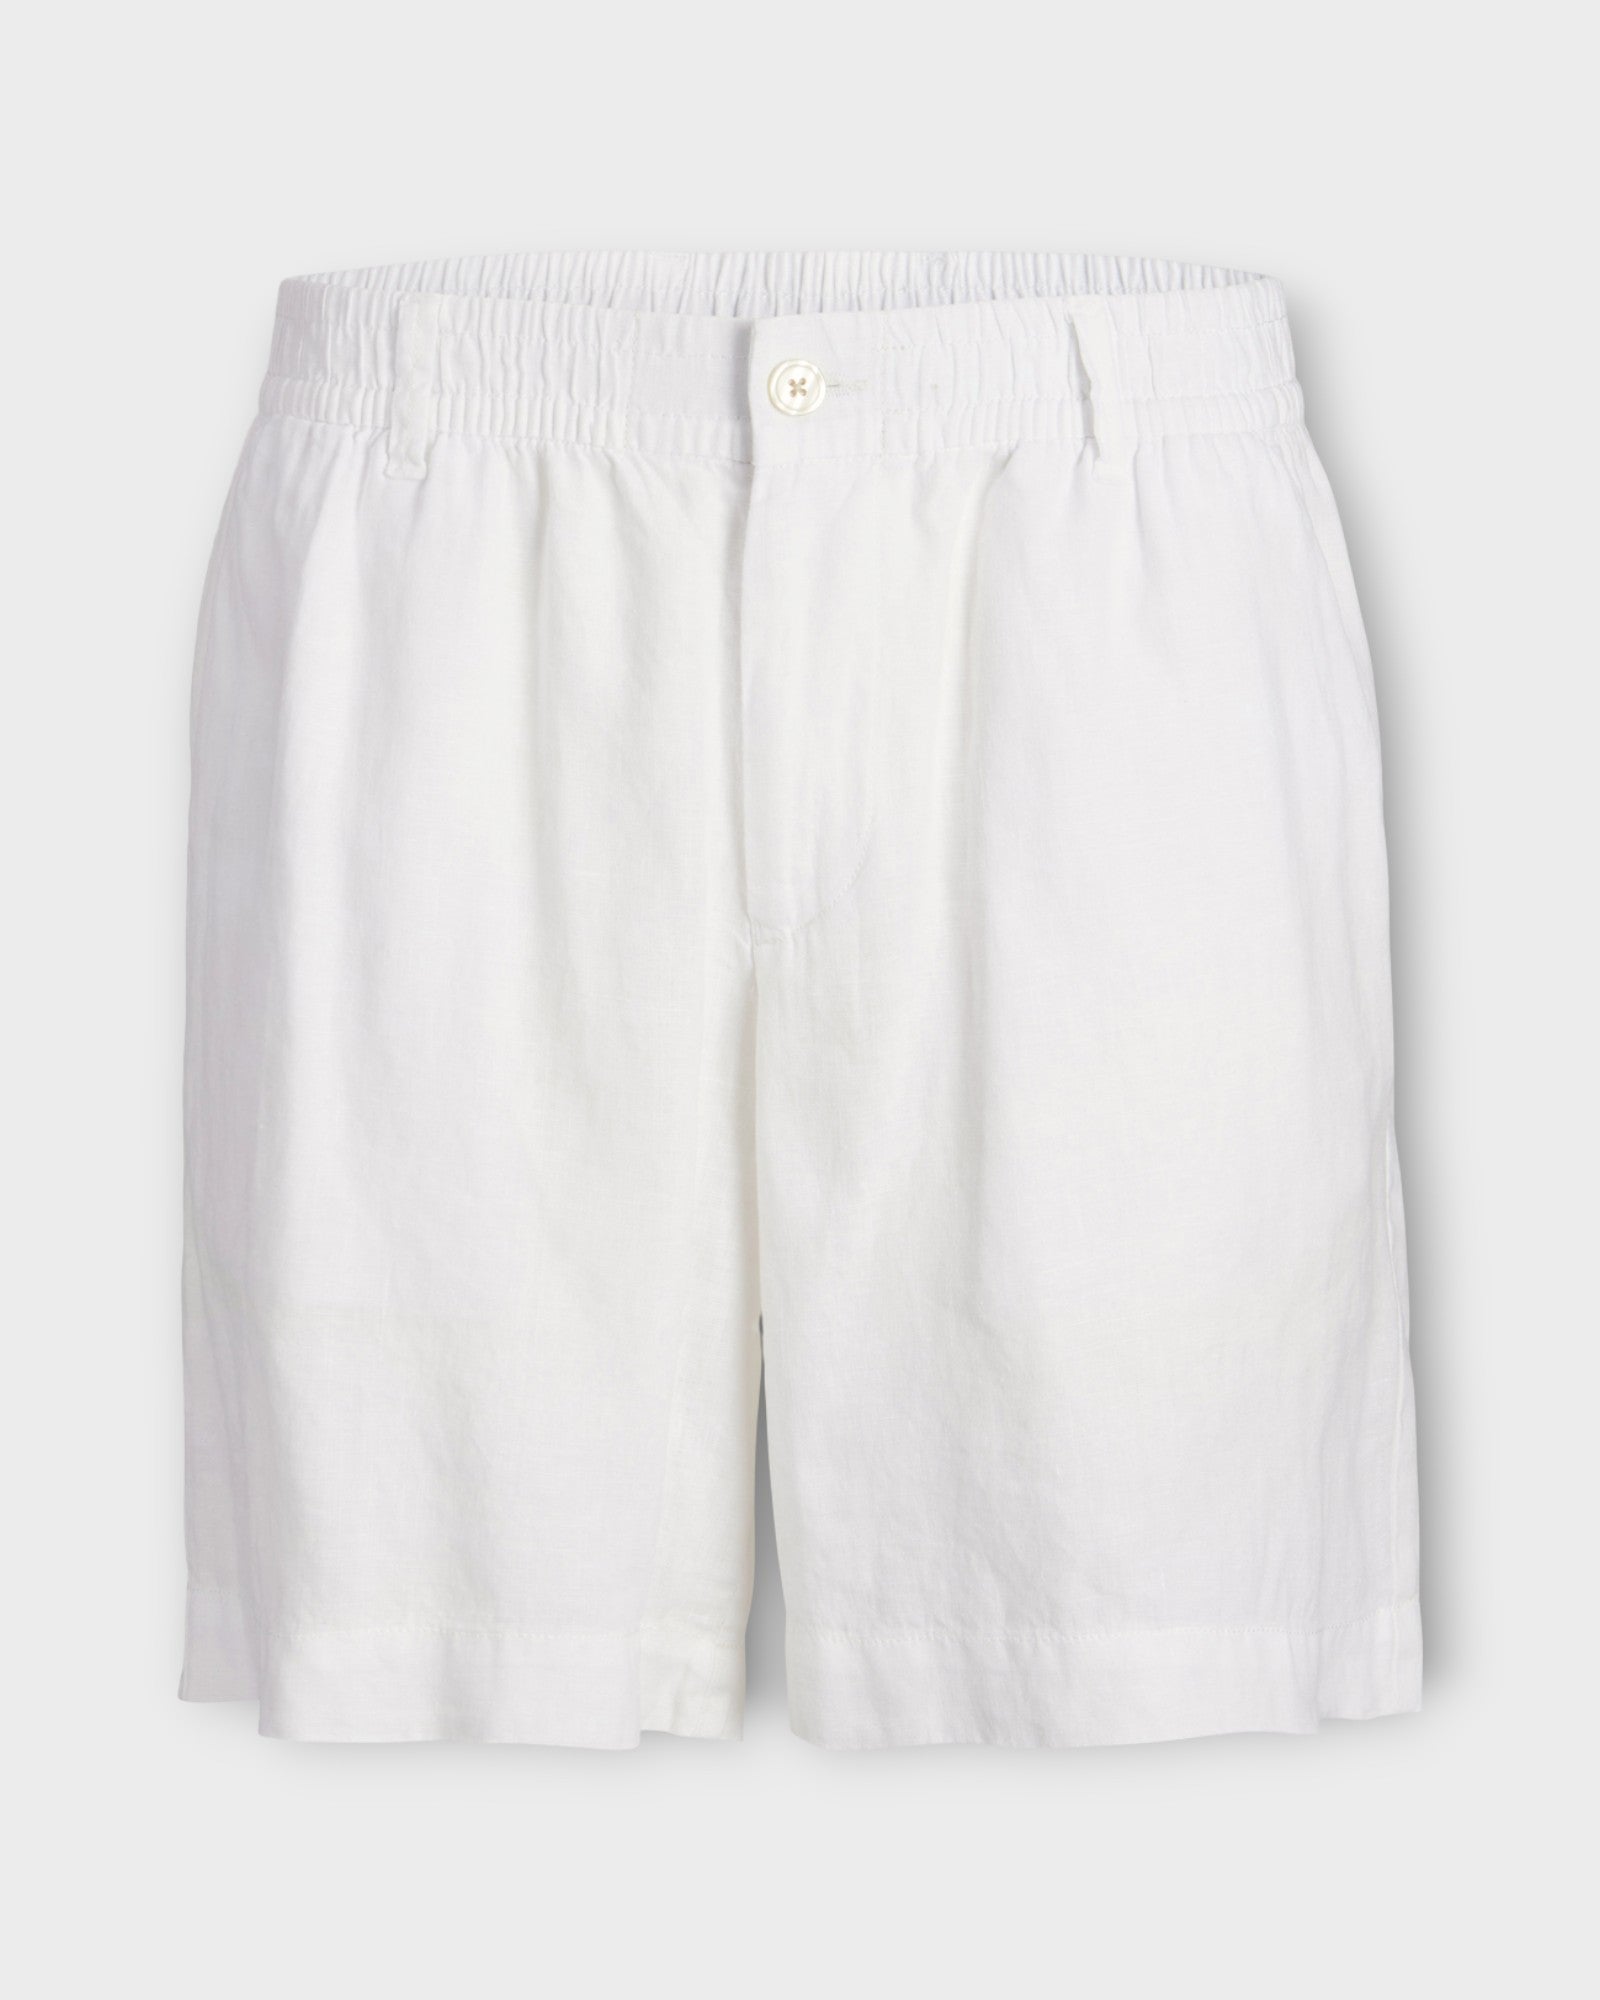 Bill Lawrence Linen Short Bright White, hvide hør shorts til mænd fra Jack and Jones. Her set forfra.